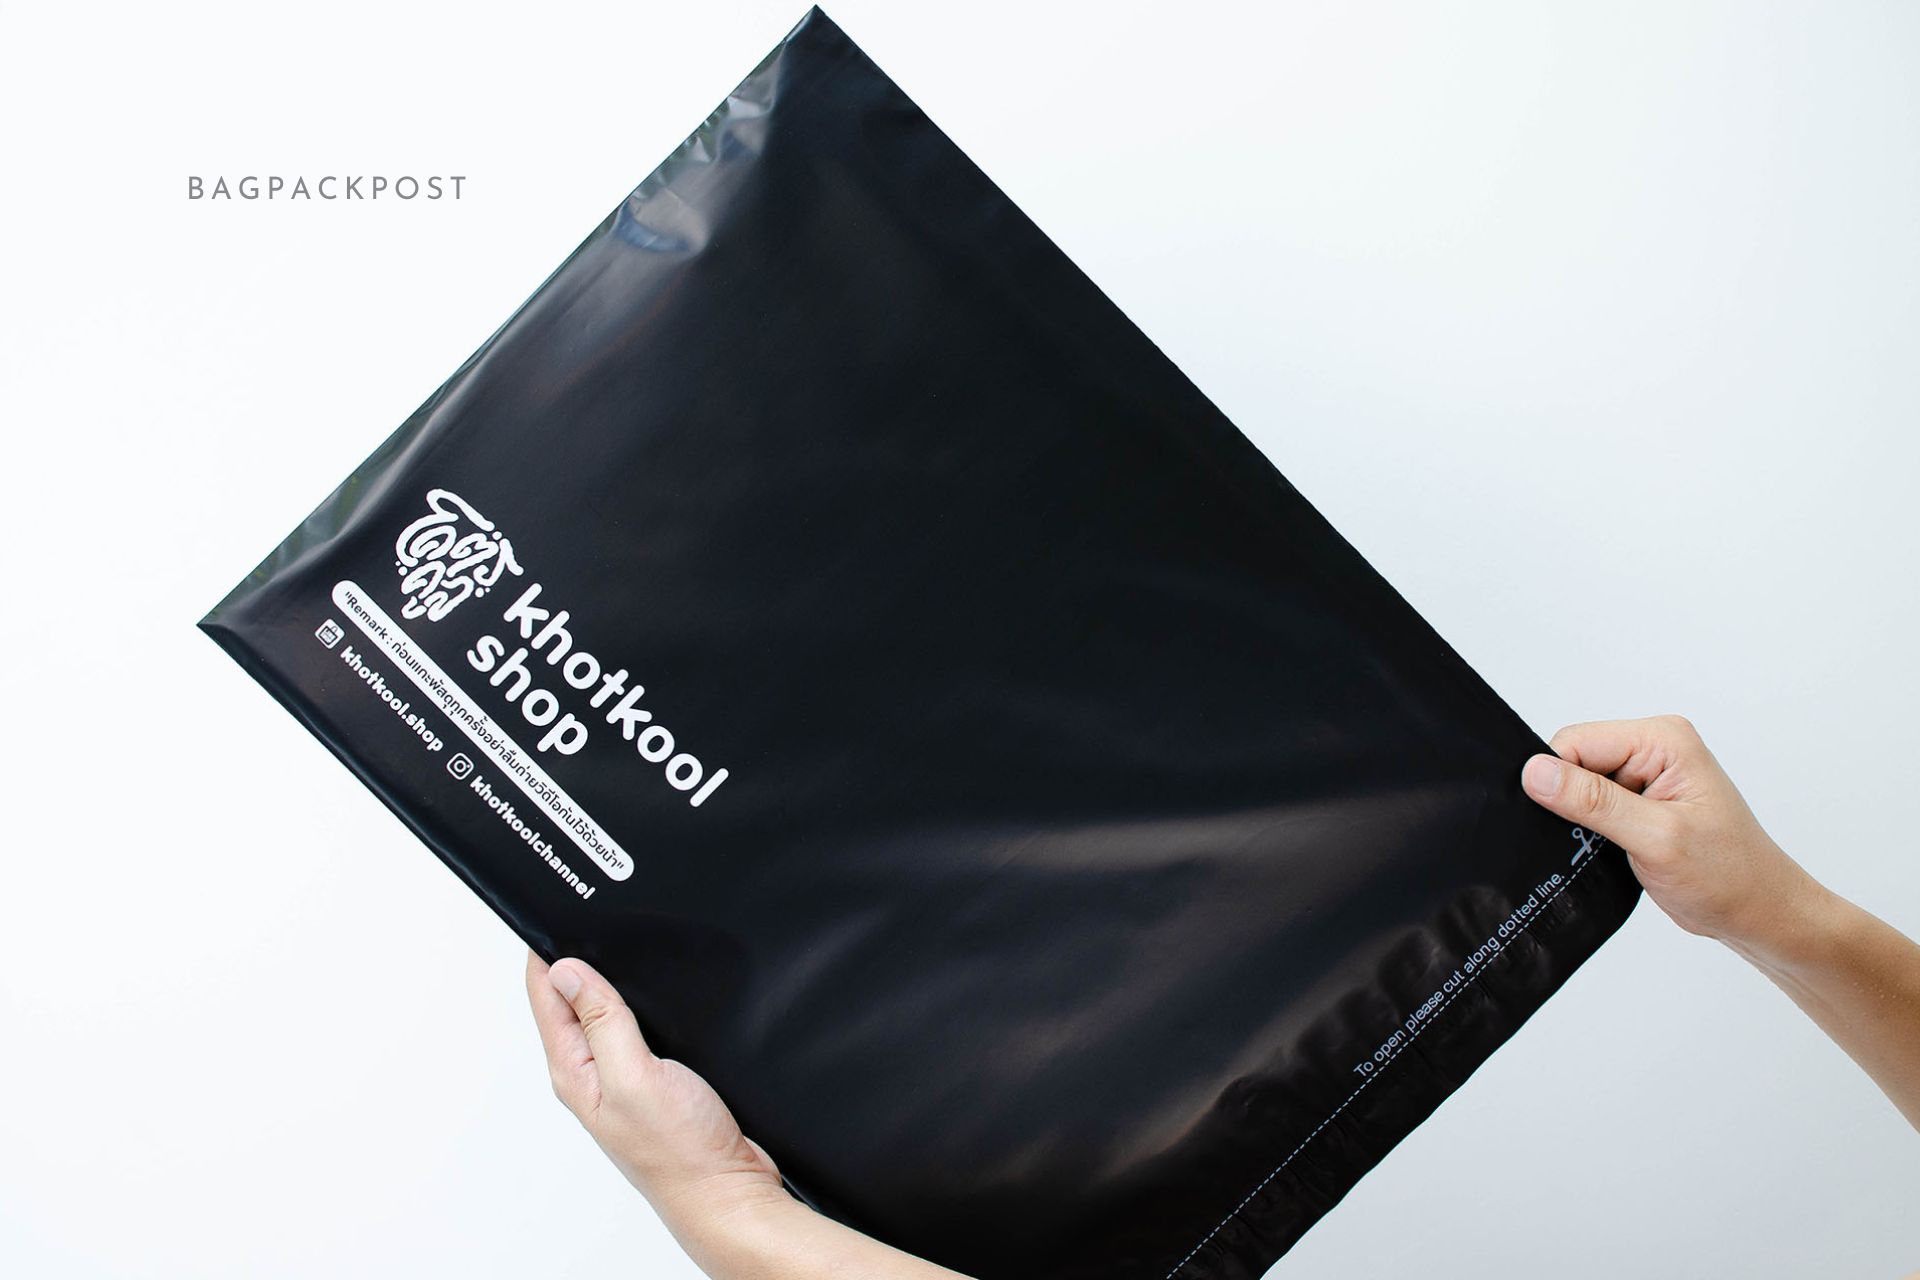 ผลิตถุงไปรษณีย์ ซองไปรษณีย์พิมพ์ลาย โคตรคูล ซองไปรษณีย์สีดำ ถุงไปรษณีย์พิมพ์ลาย 4 BagPackPost